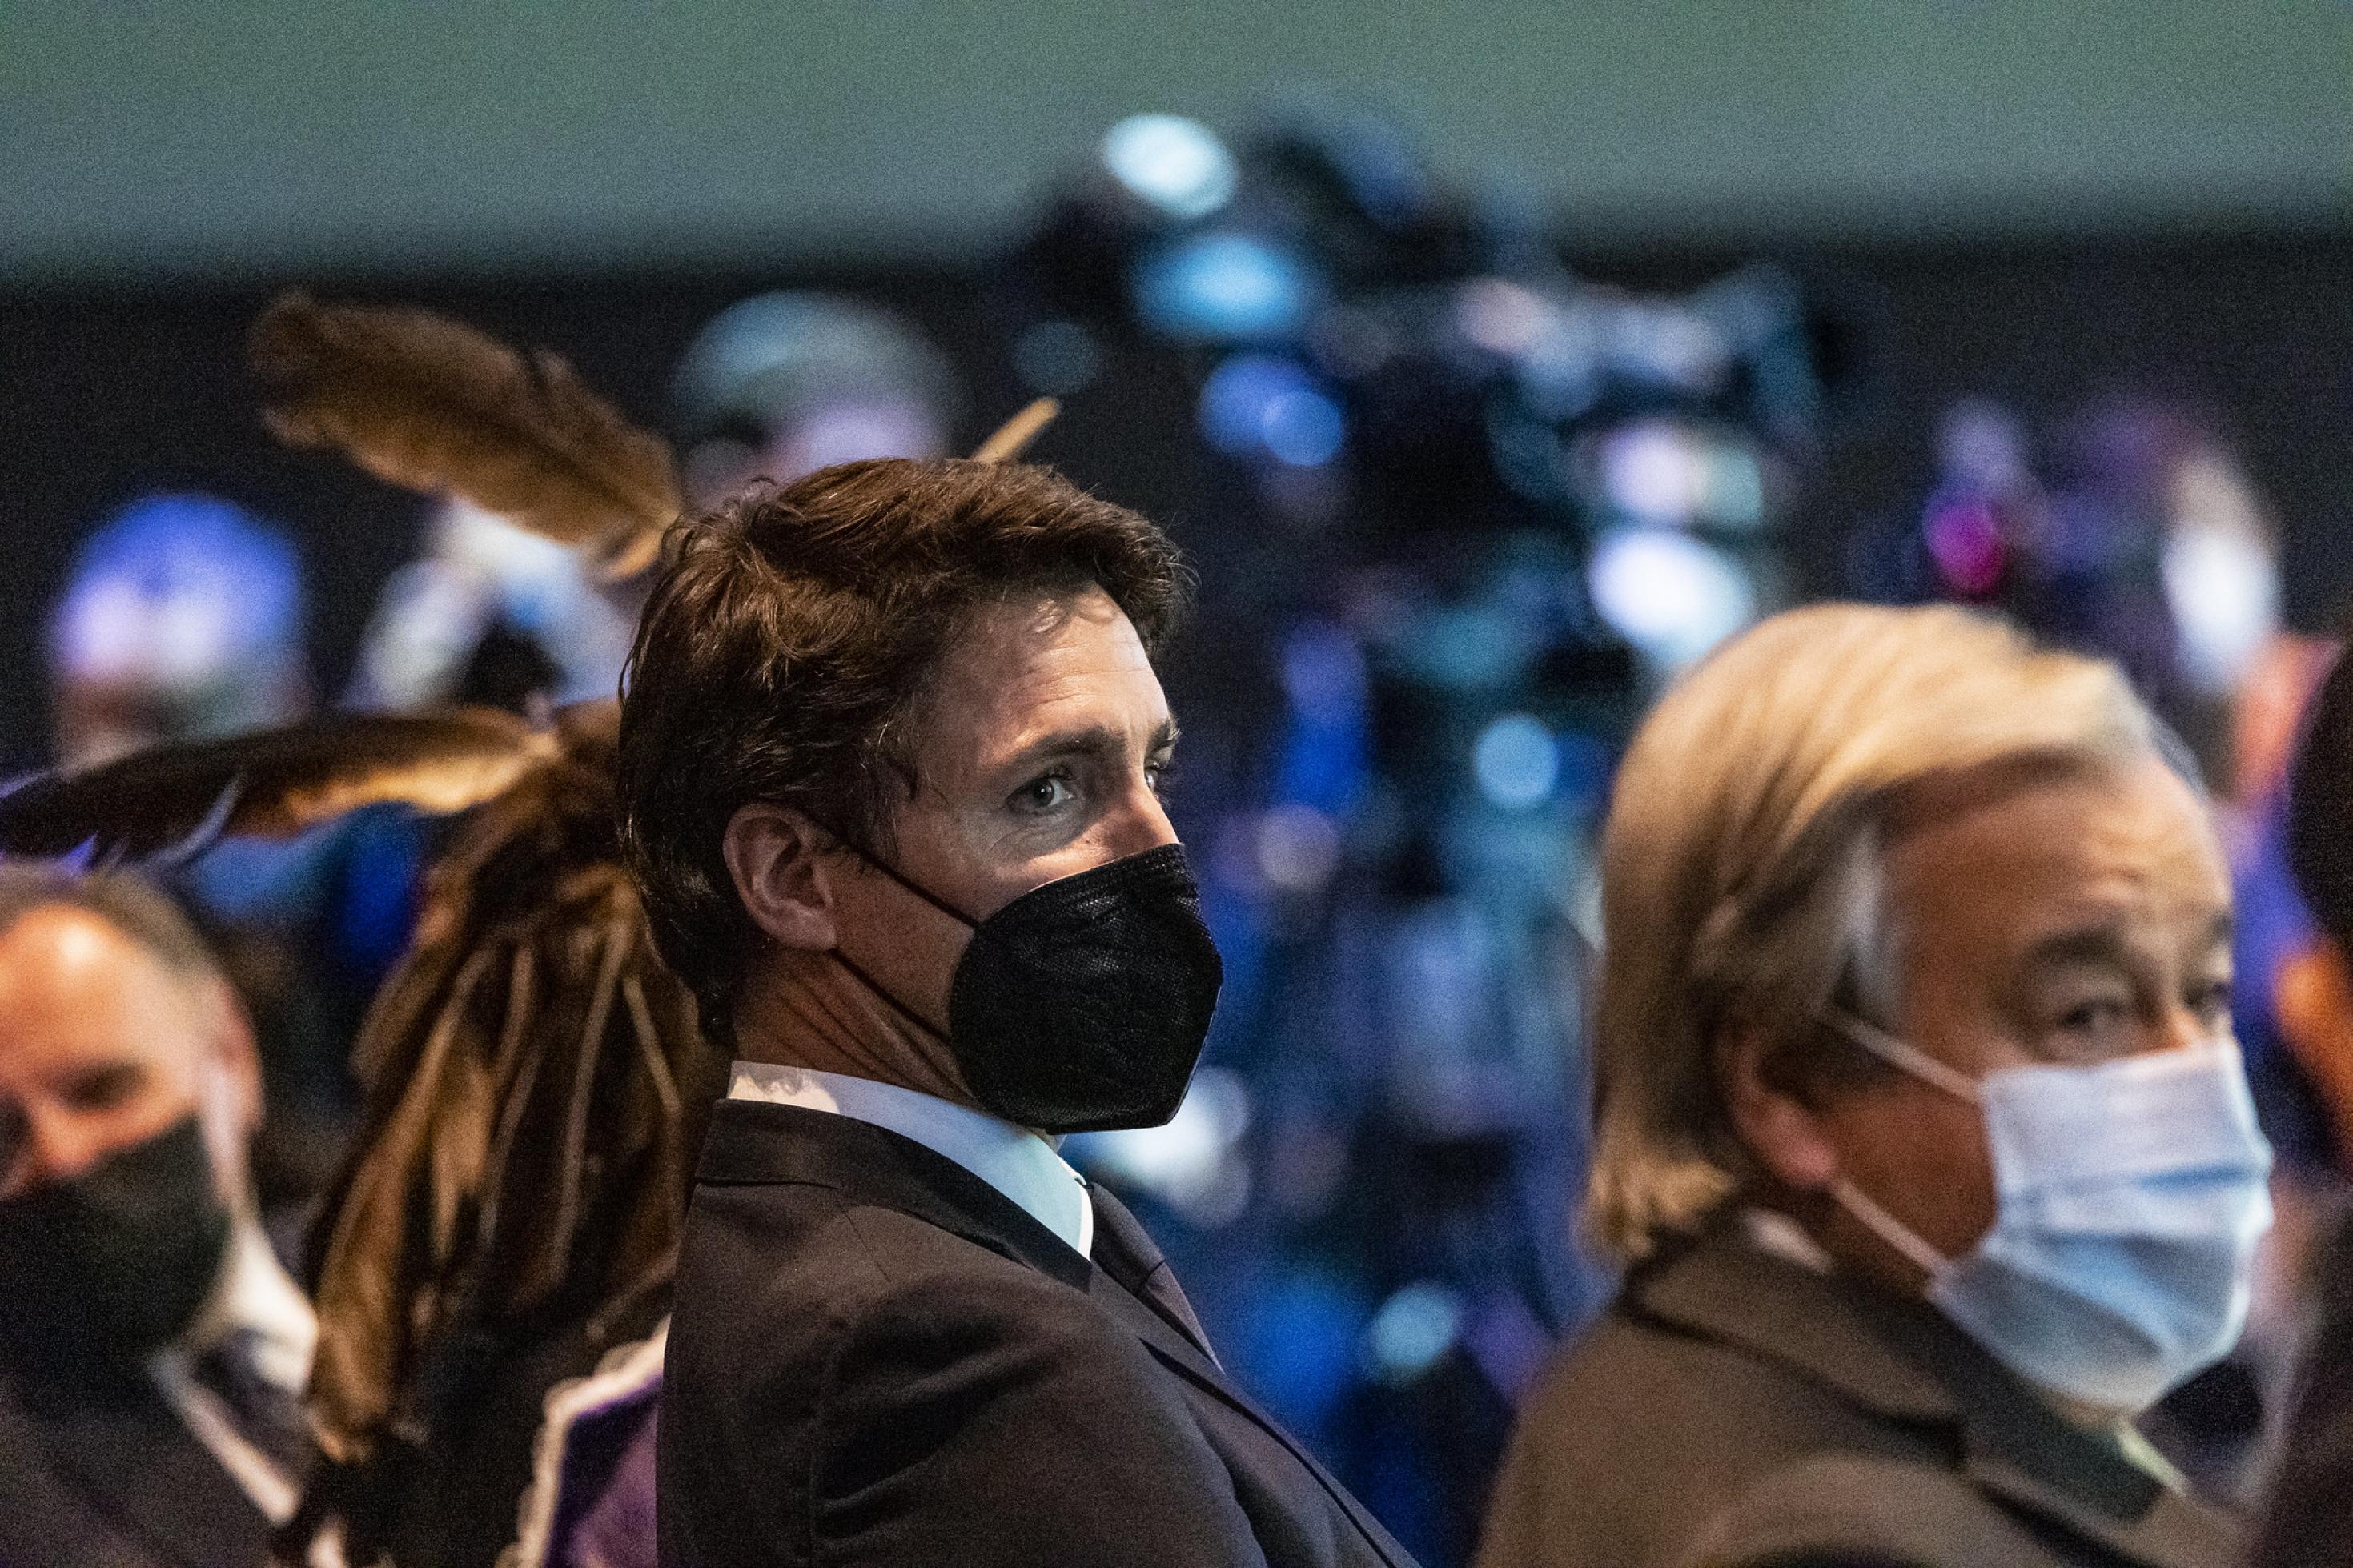 Trudeau mit Maske auf einem Stuhl im Publikum